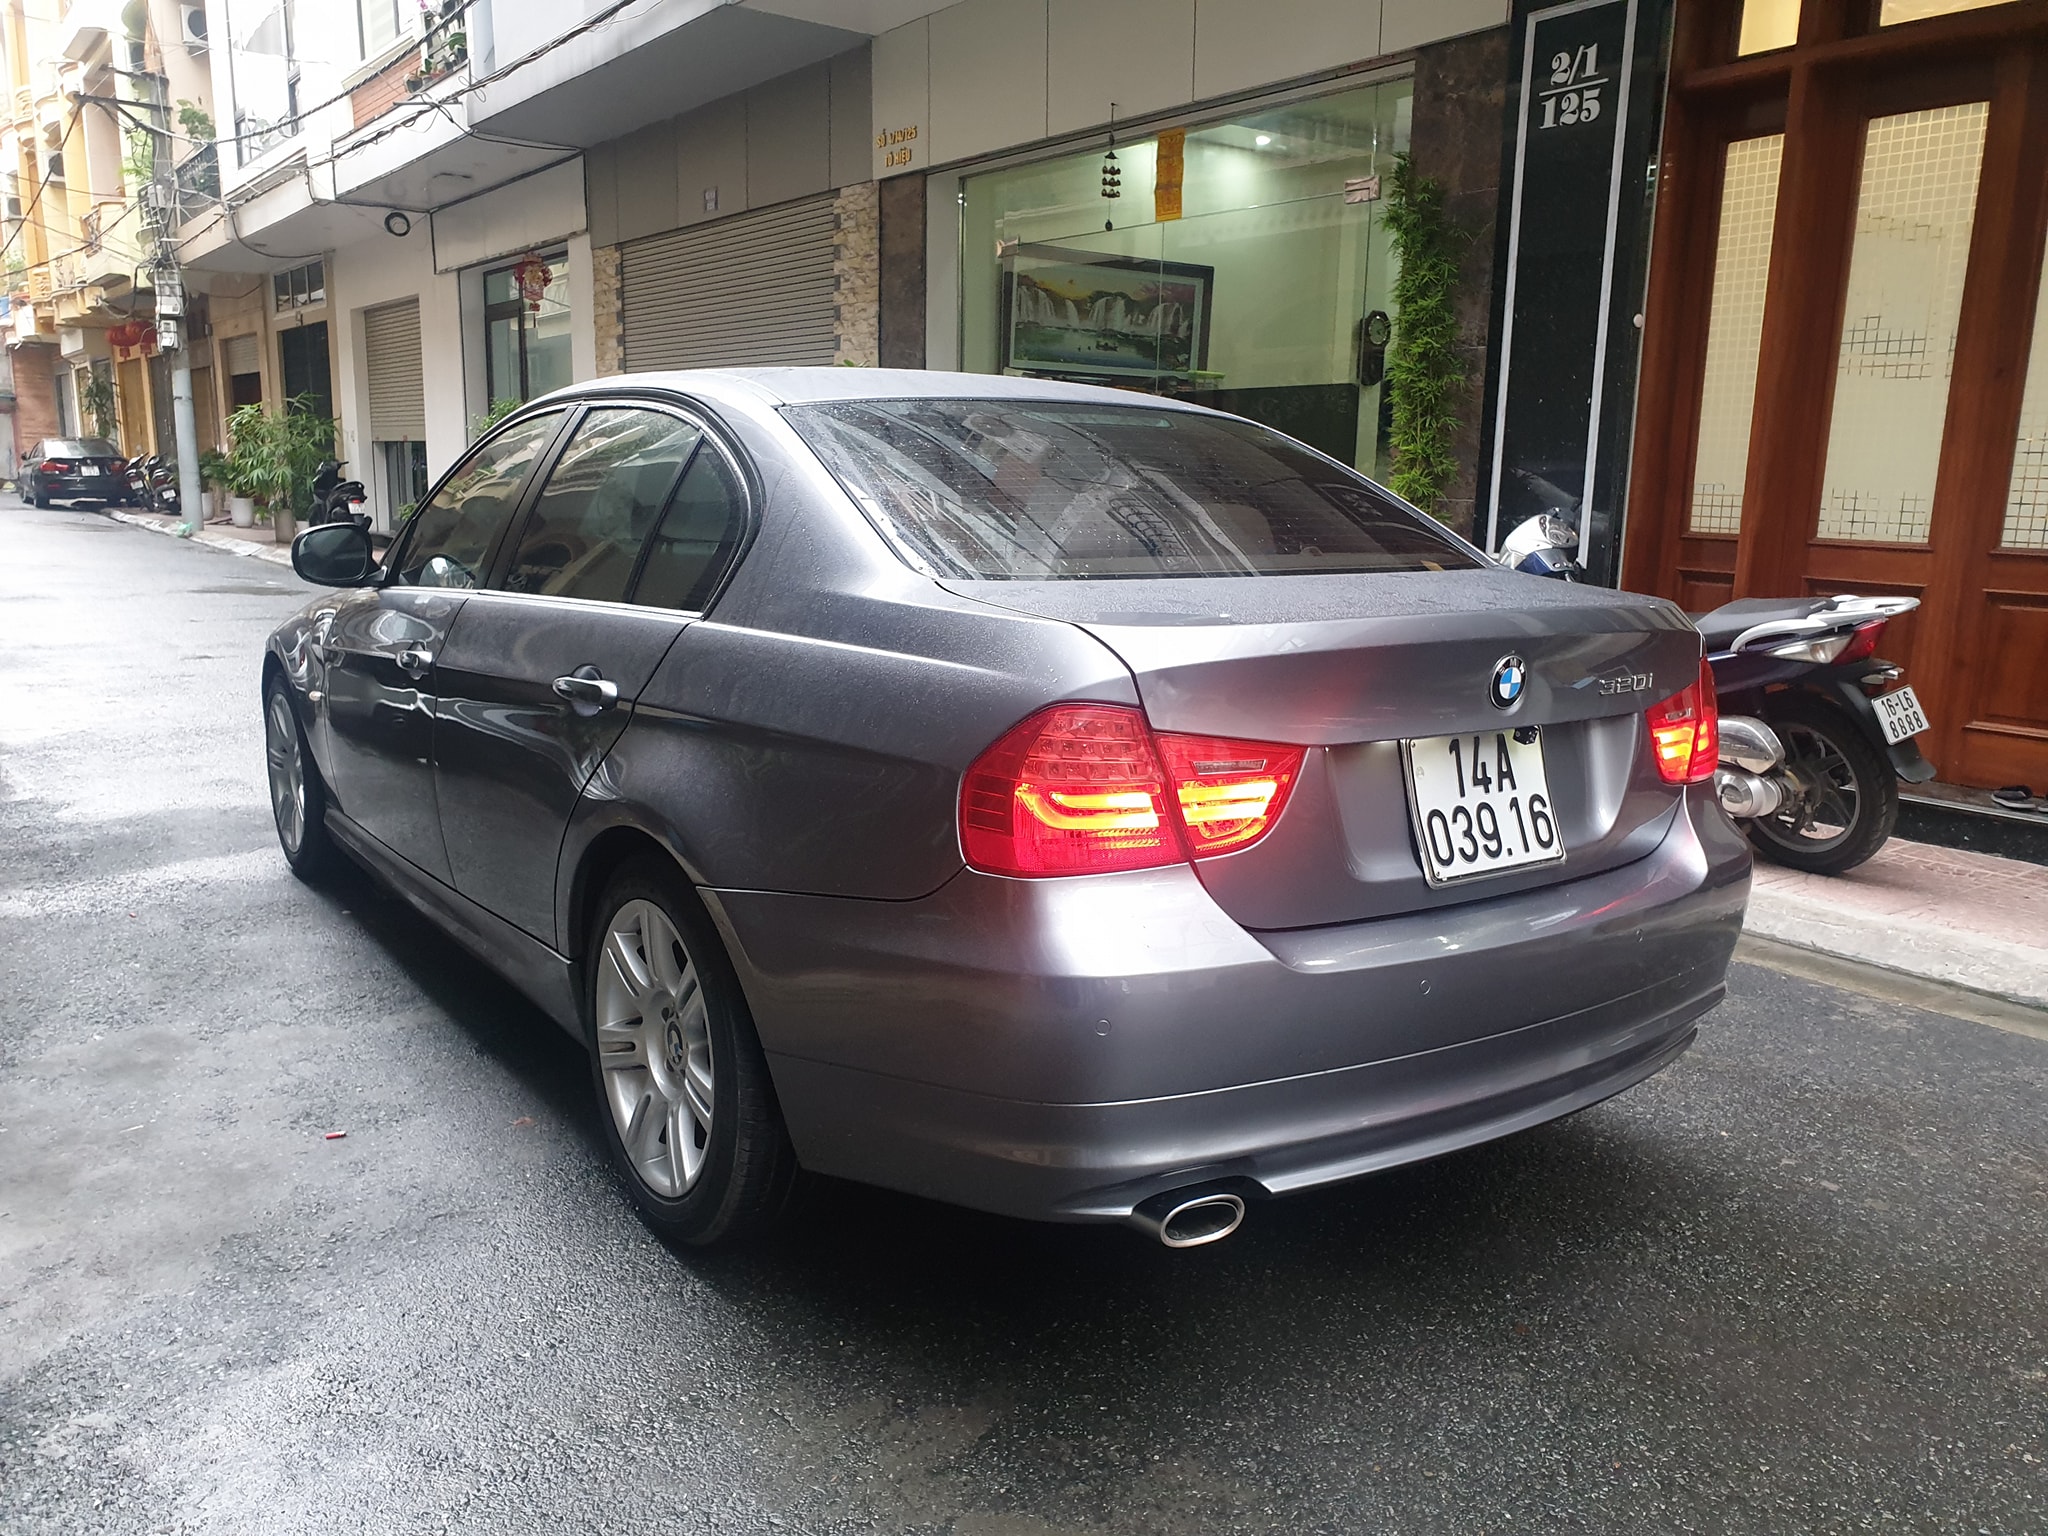 Ngọc Trinh xinh xắn bên siêu xe BMW i8